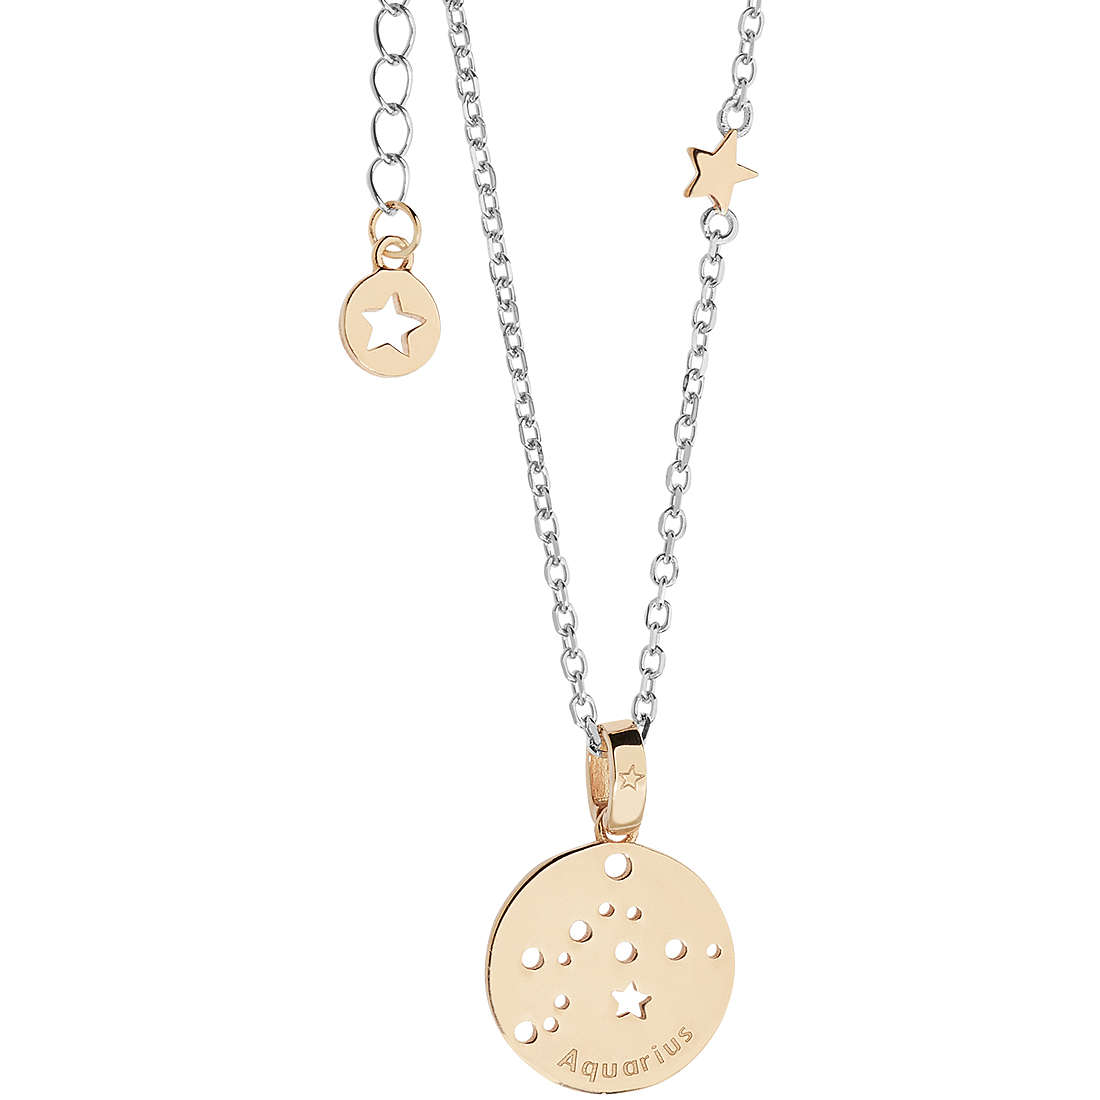 necklace woman zodiac sign Aquarius Comete jewel Stella GLA 209